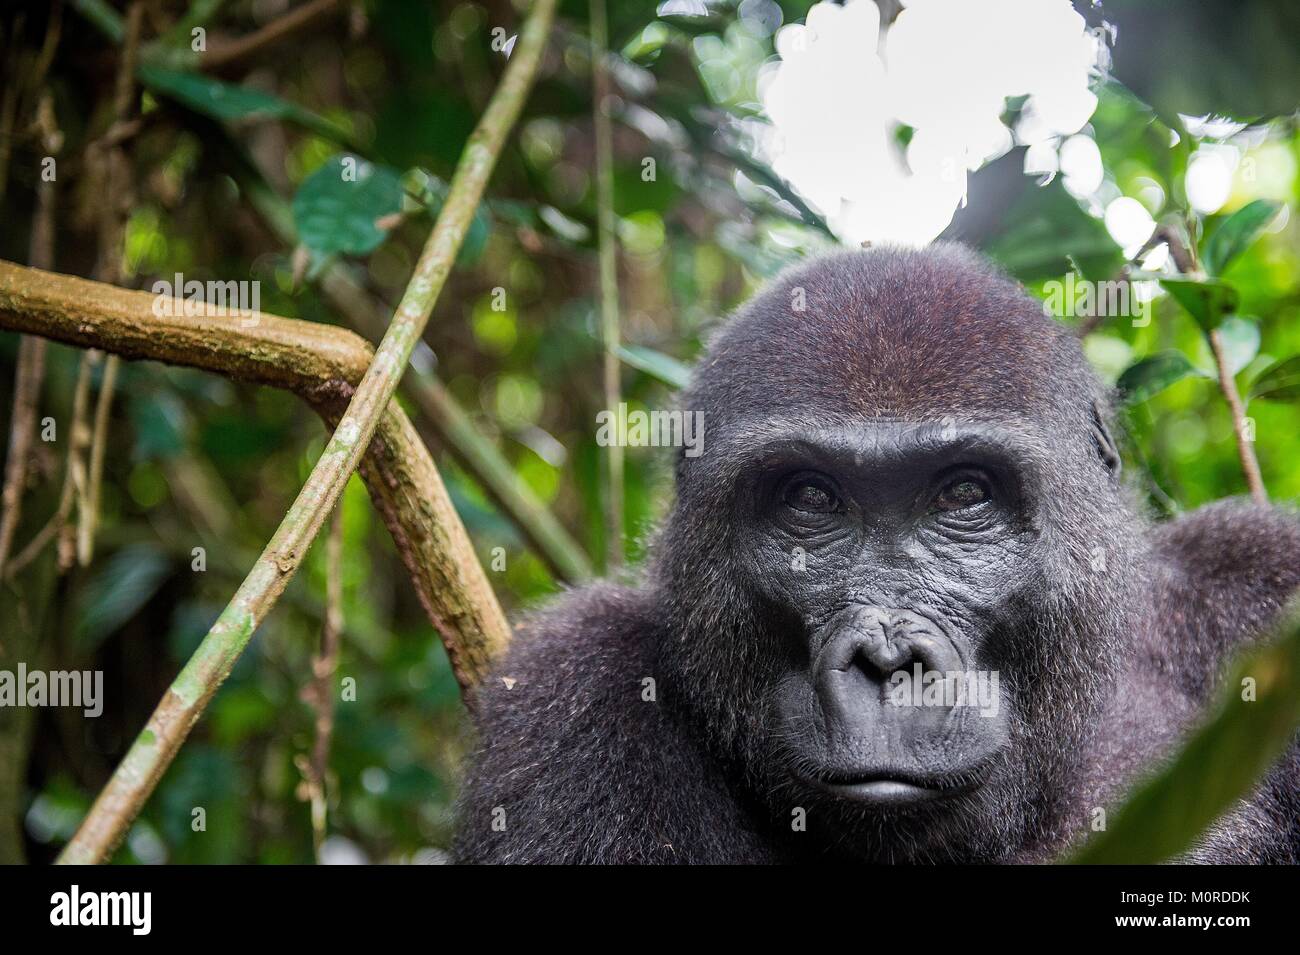 Retrato de un gorila de las tierras bajas occidentales (Gorilla gorilla gorilla) cerca en una corta distancia. Hembra adulta de un gorila en un hábitat natural. Selva de Foto de stock